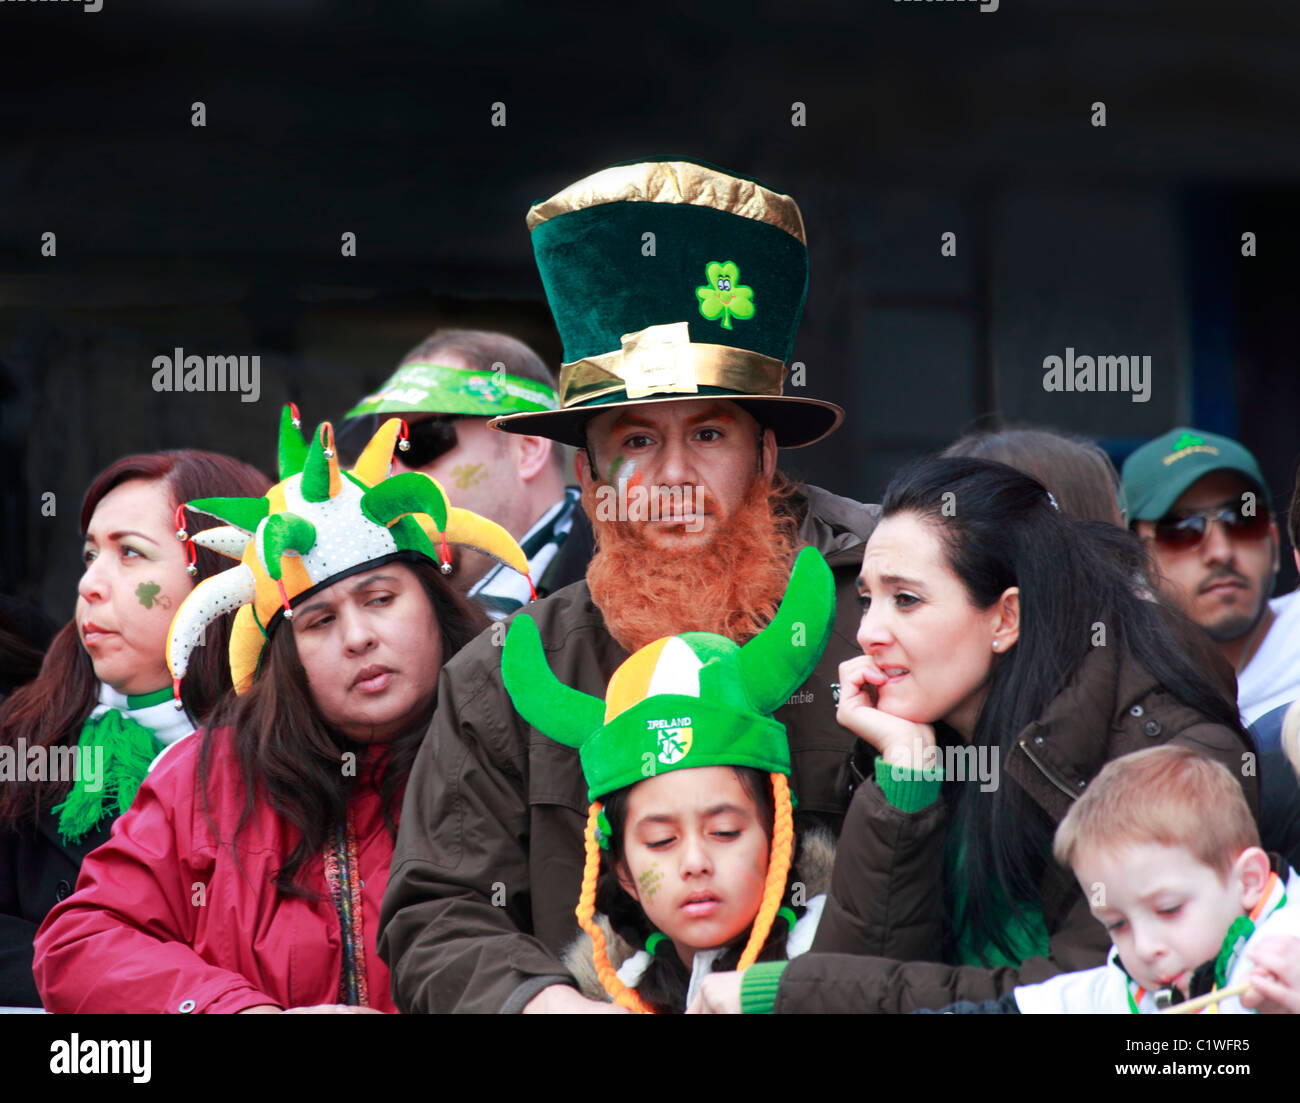 St.Patrick's Day Parade Spectateurs Dublin Irlande Leprechaun outfit Banque D'Images